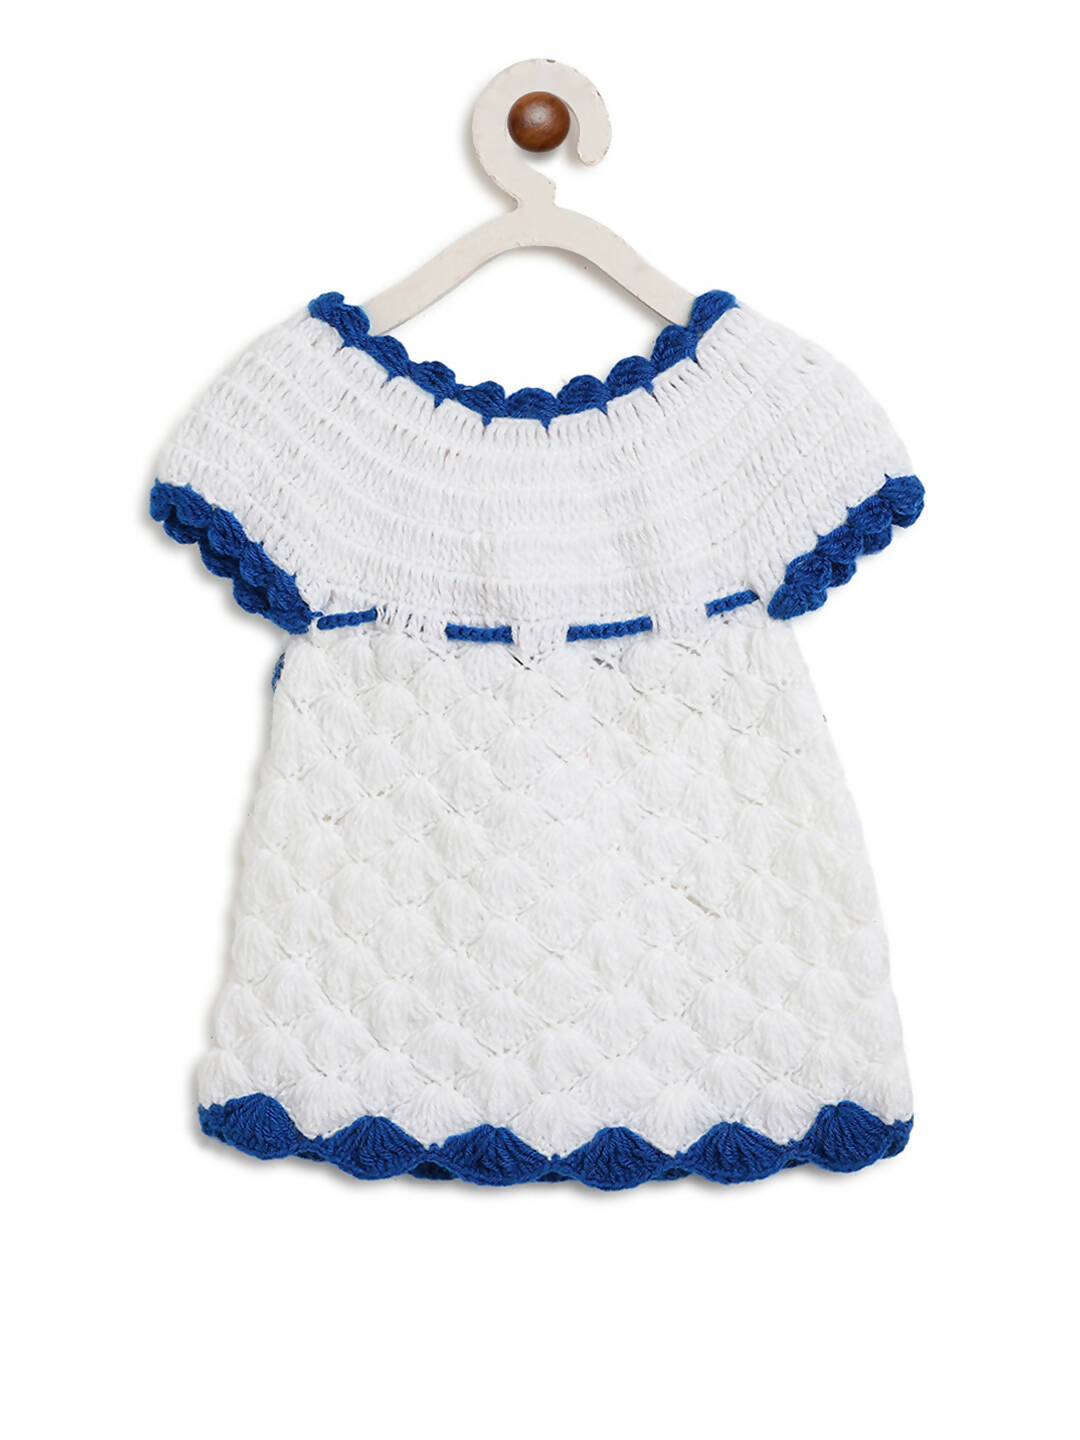 ChutPut Hand knitted Crochet Elsa Dress with Cap - White - Distacart